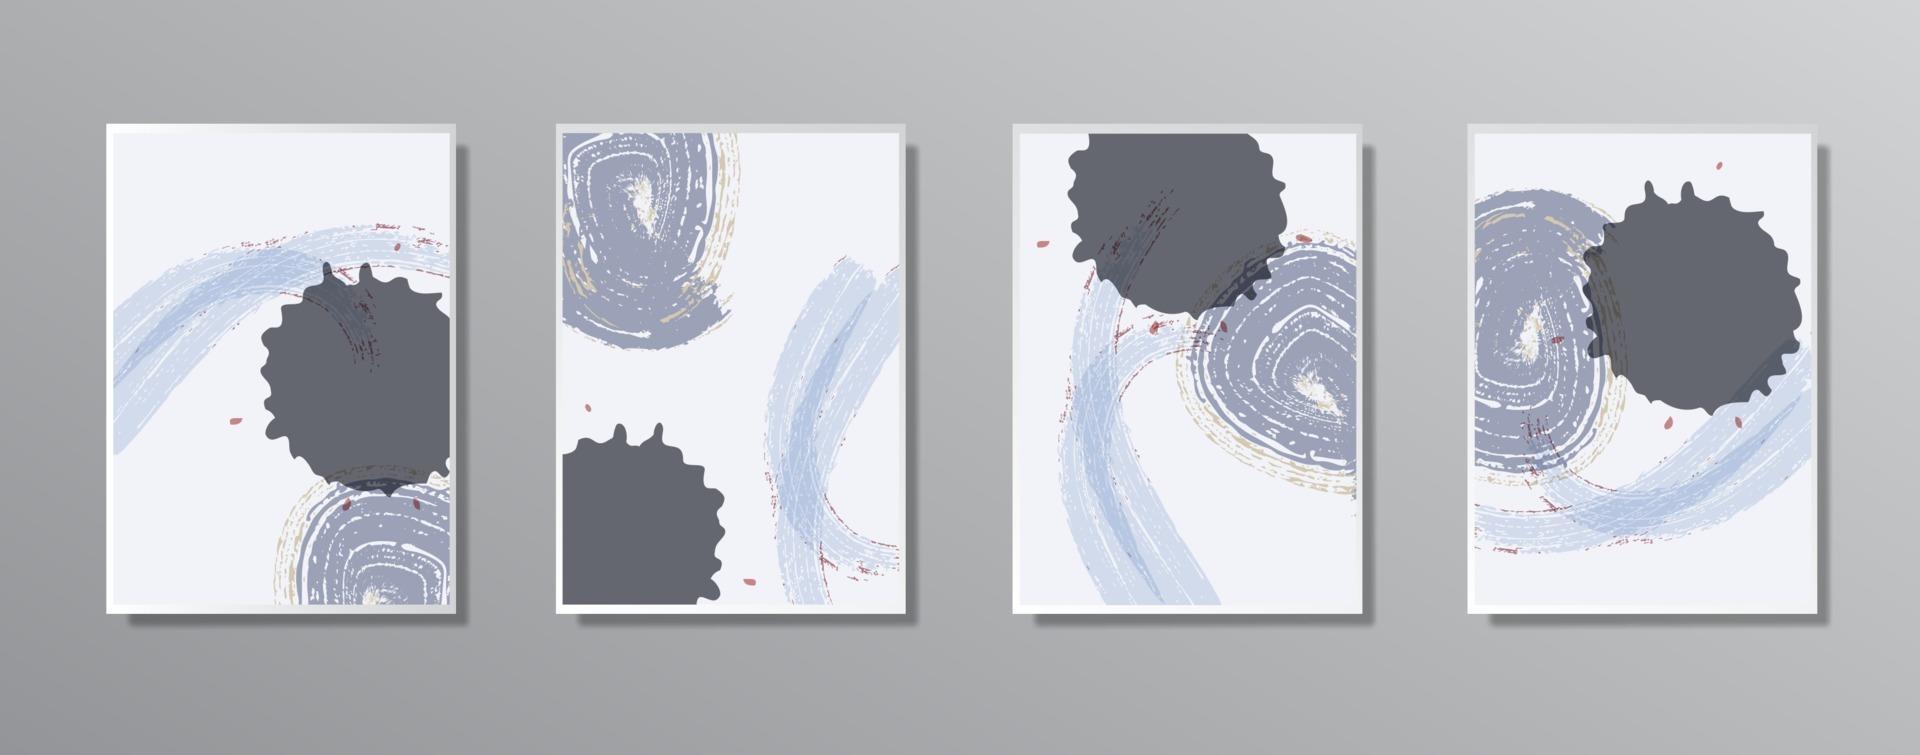 conjunto de ilustraciones en color neutro vintage minimalistas creativas dibujadas a mano vector